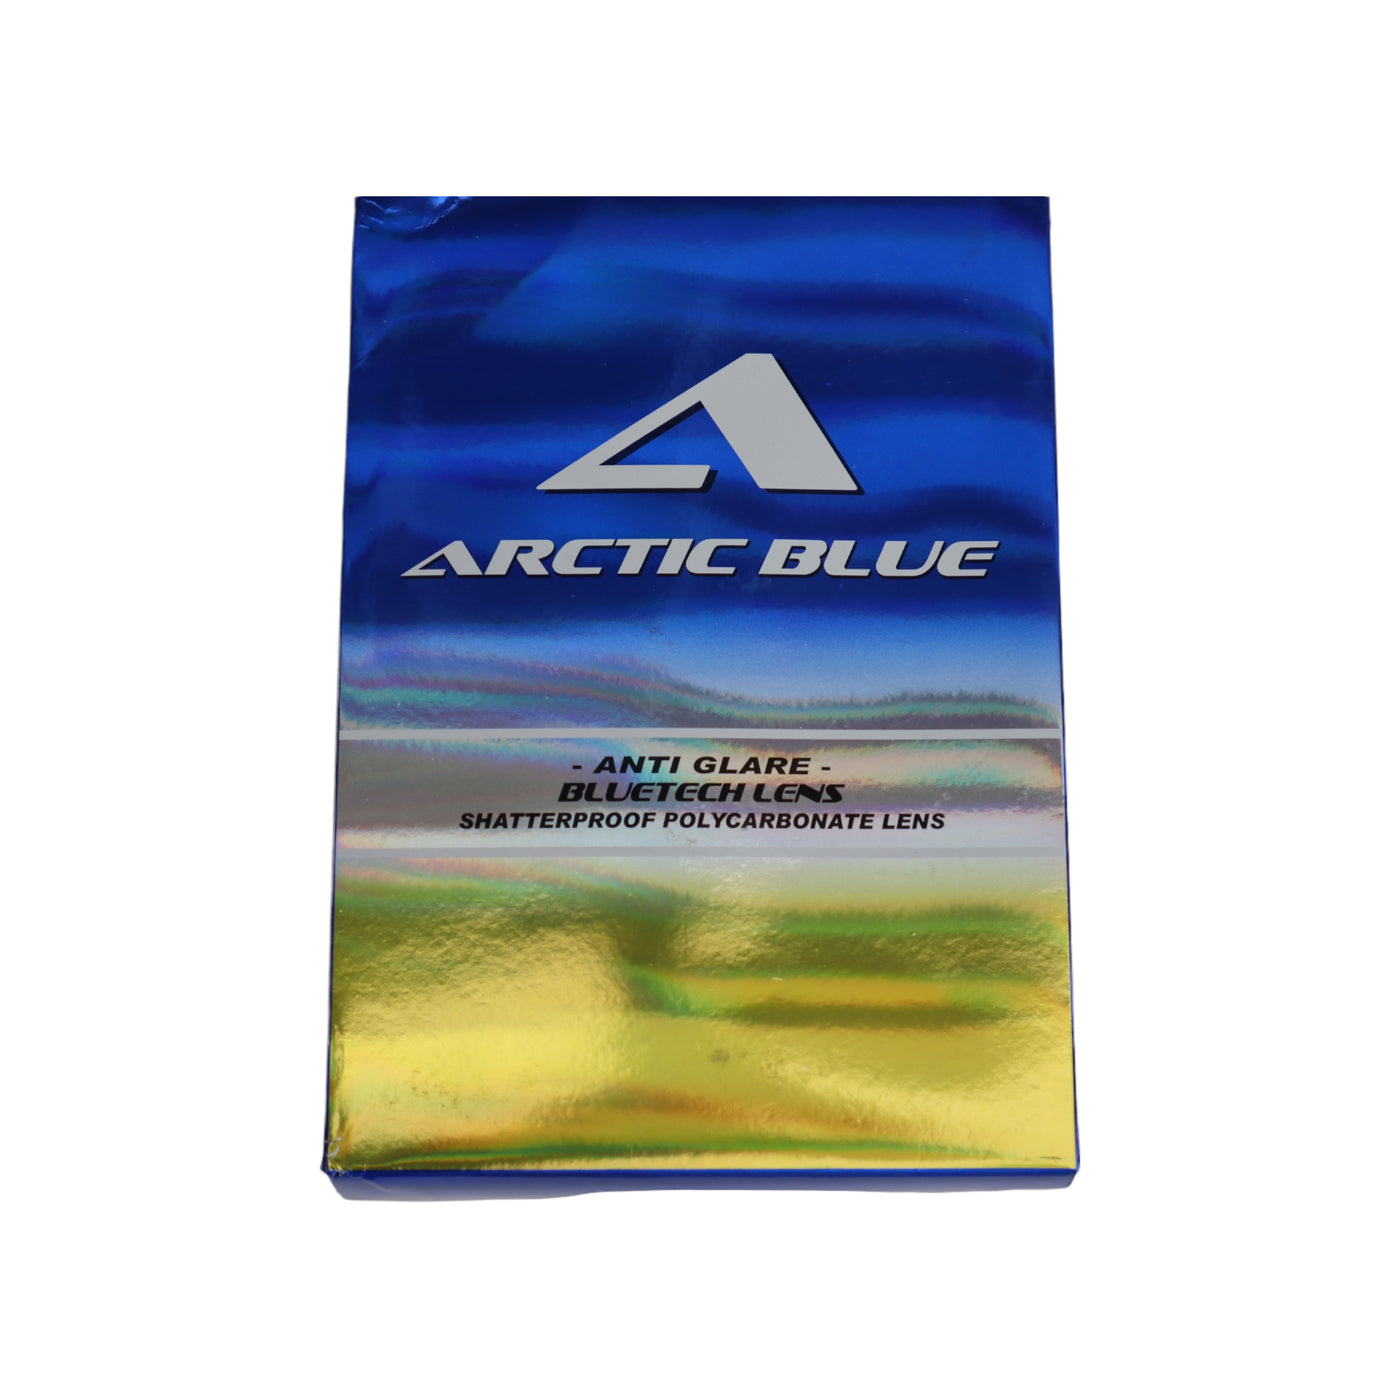 ARCTIC BLUE Anti Glare BLUETECH Lens White Frame w/ Shatterproof Blue Lens